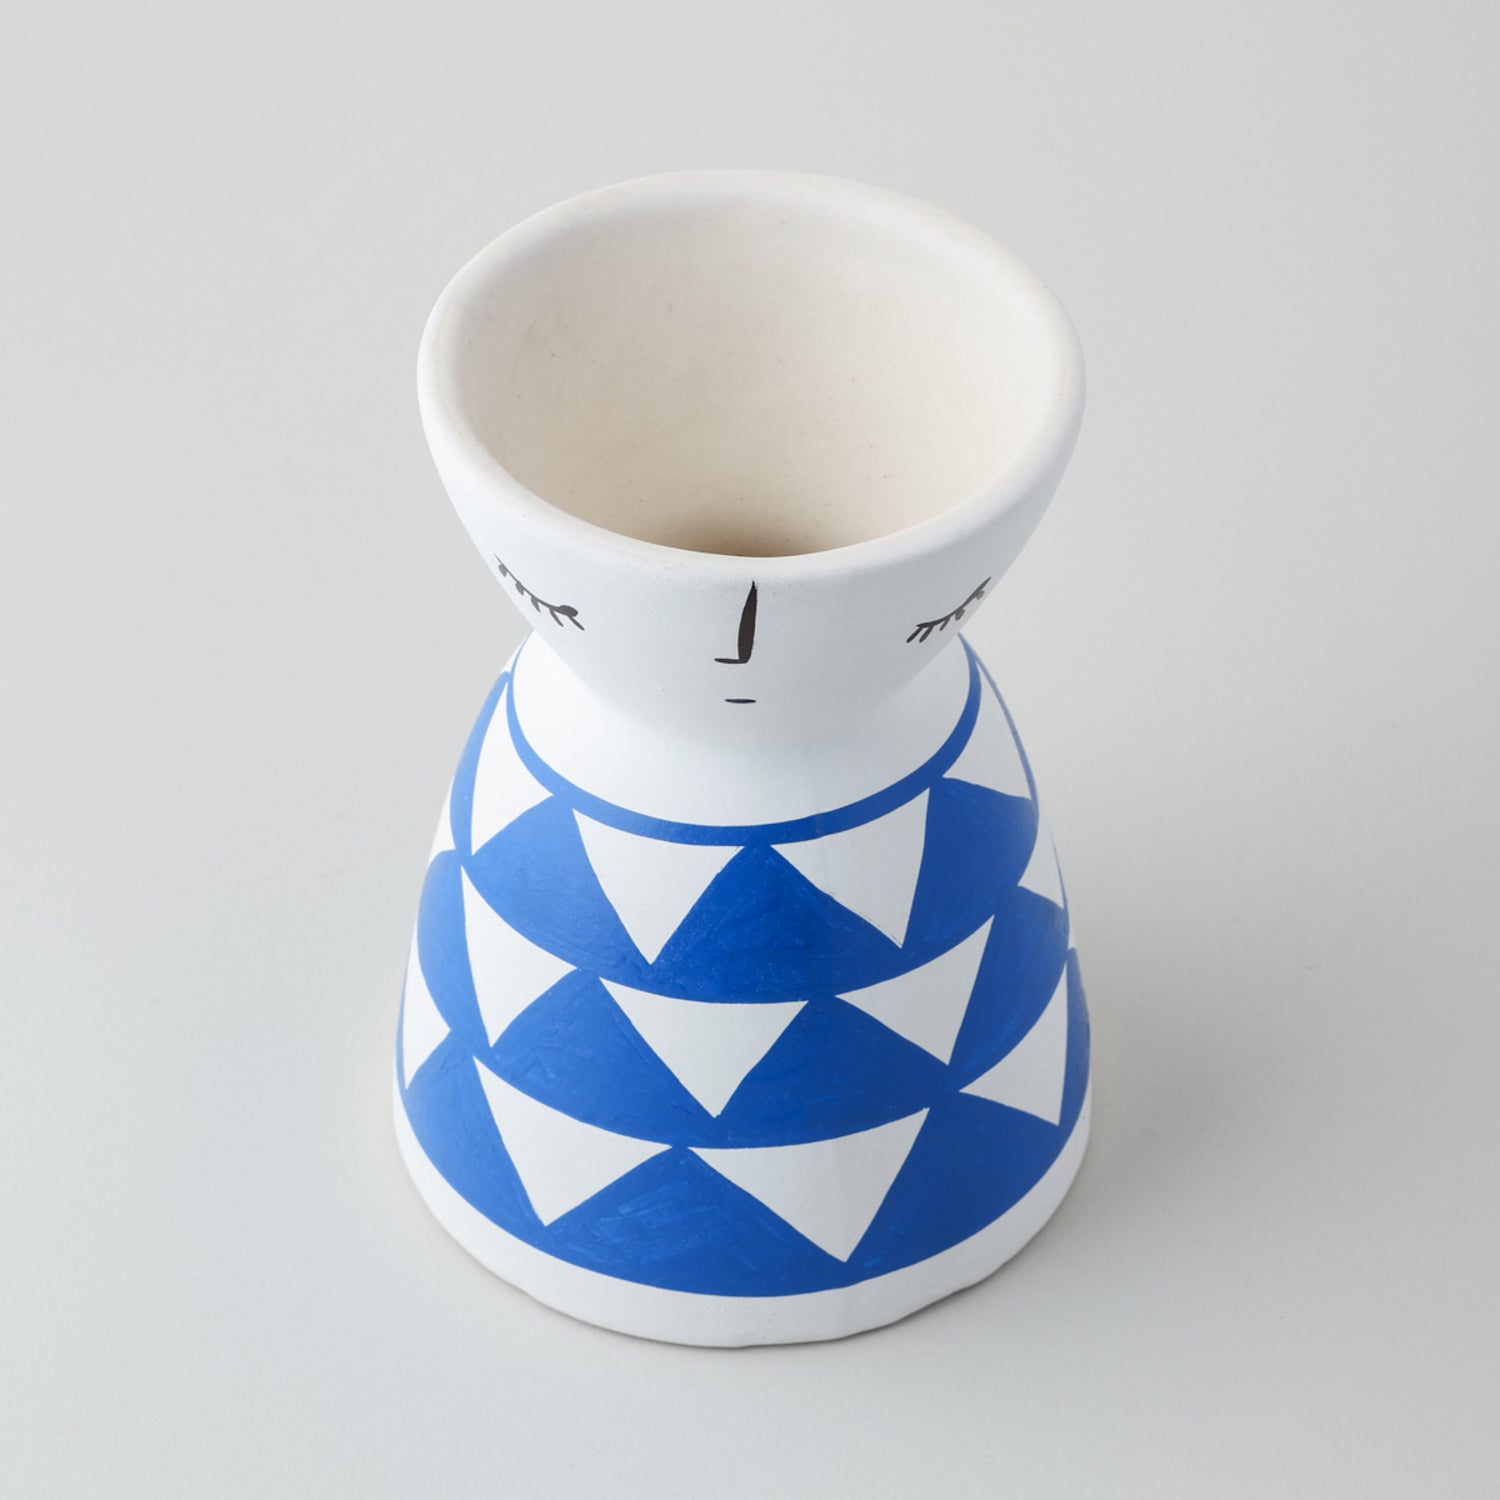 Ceramic Flower Vase (Set of 2) White Blue Dot & Triangle 5x4